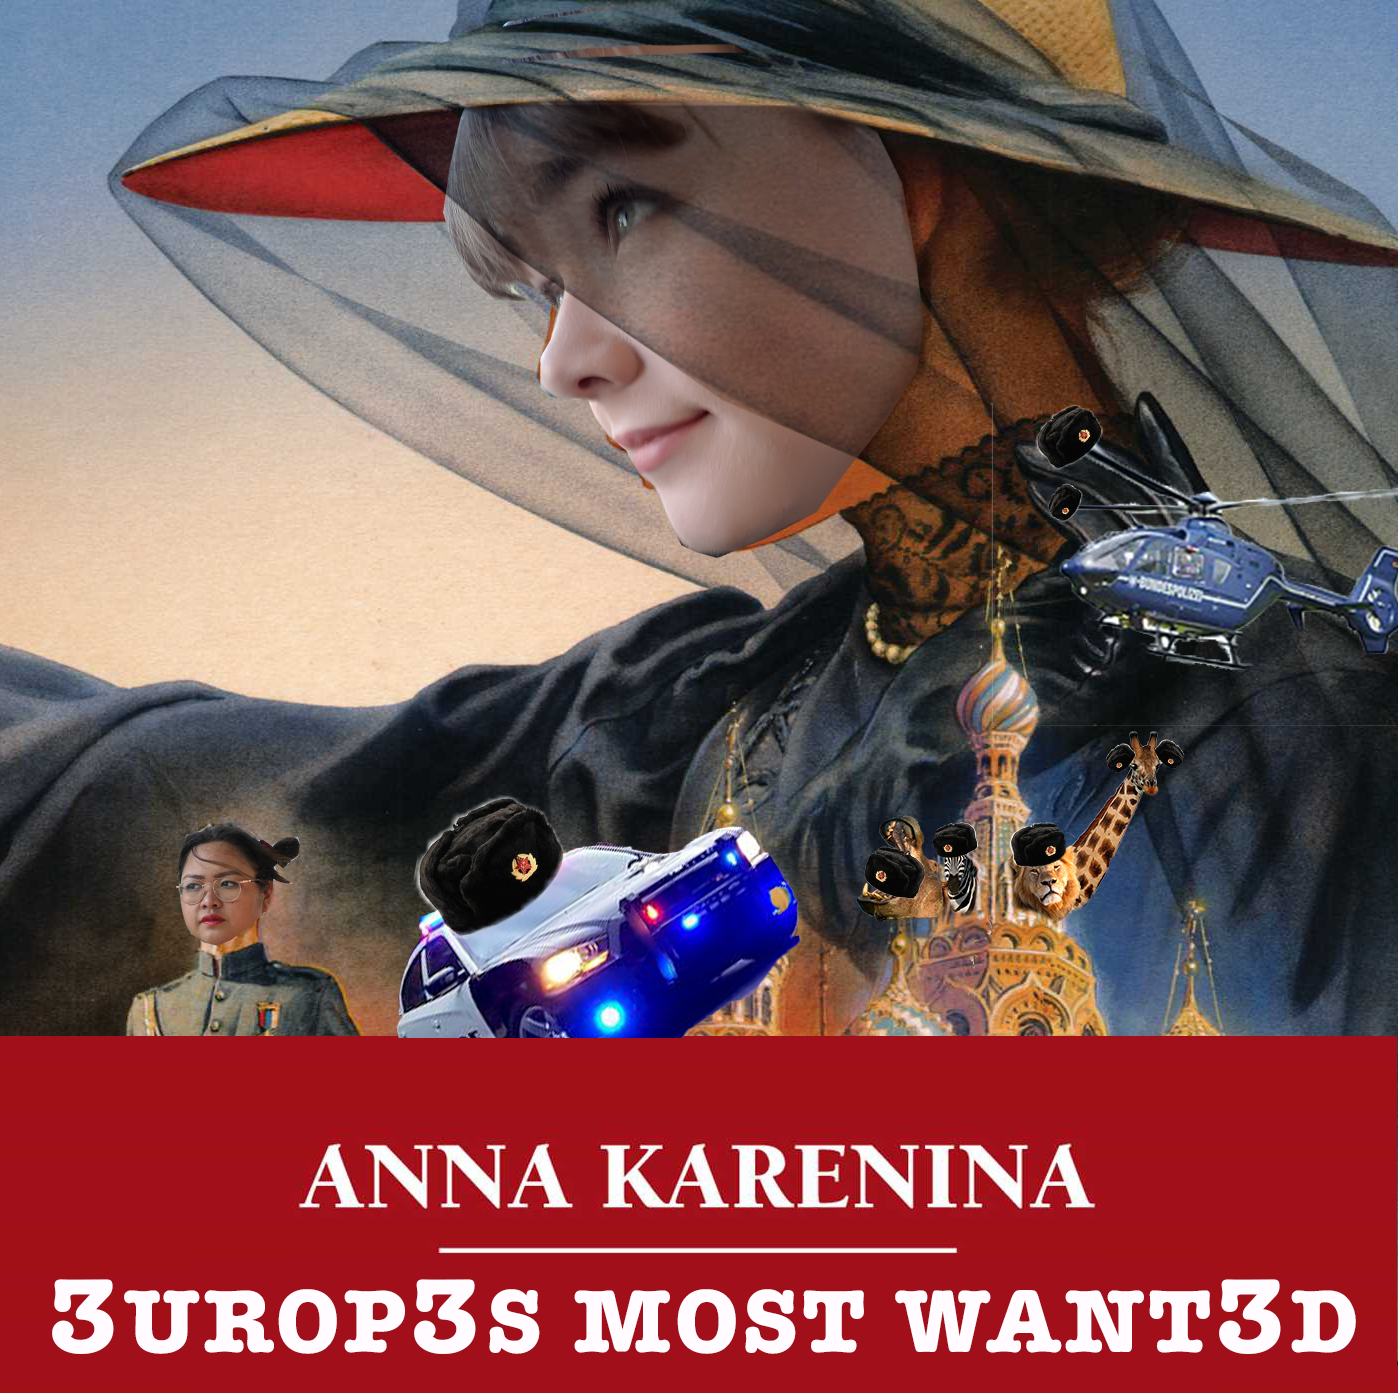 Ep 27 - Anna Karenina Parts 6, 7 & 8